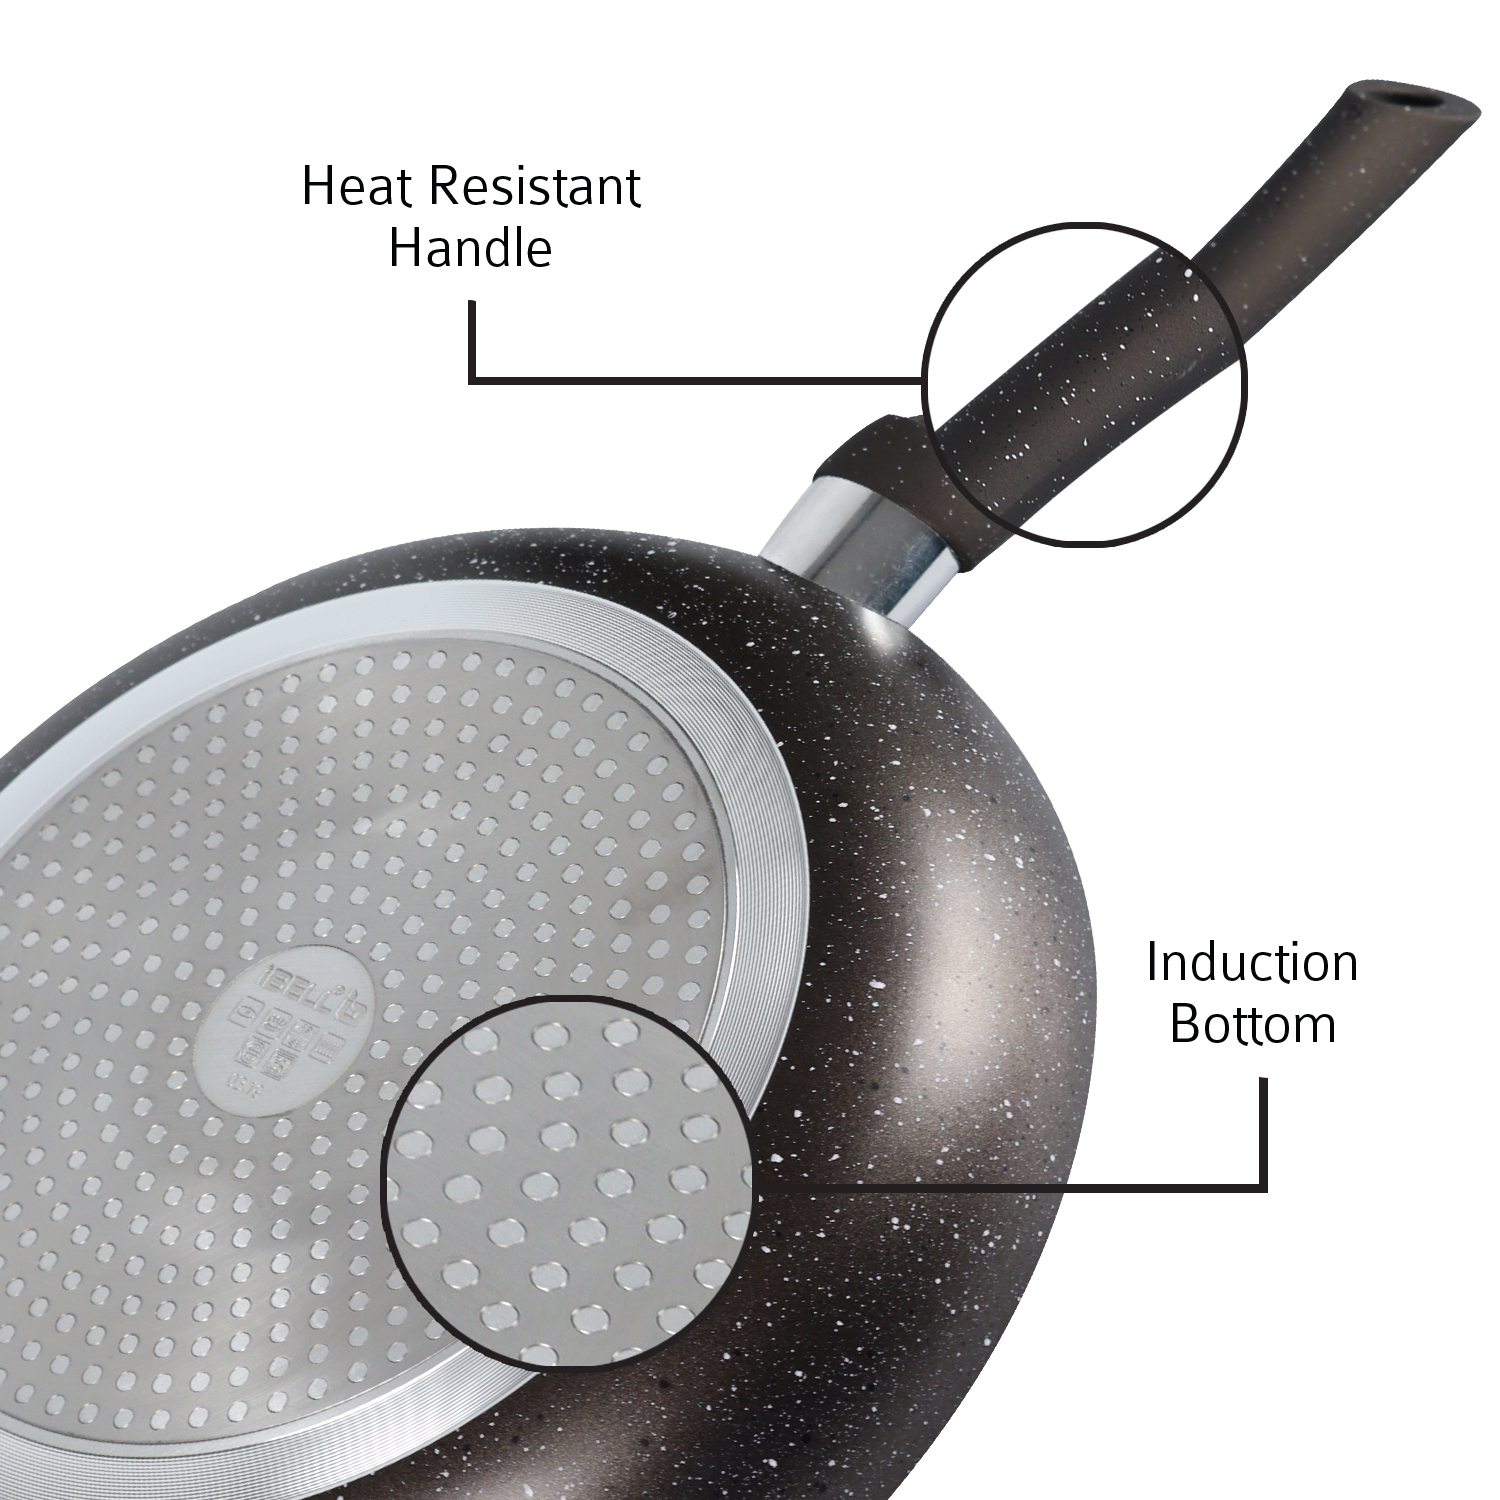 Ibell induction base aluminium fry pan 26 cm black